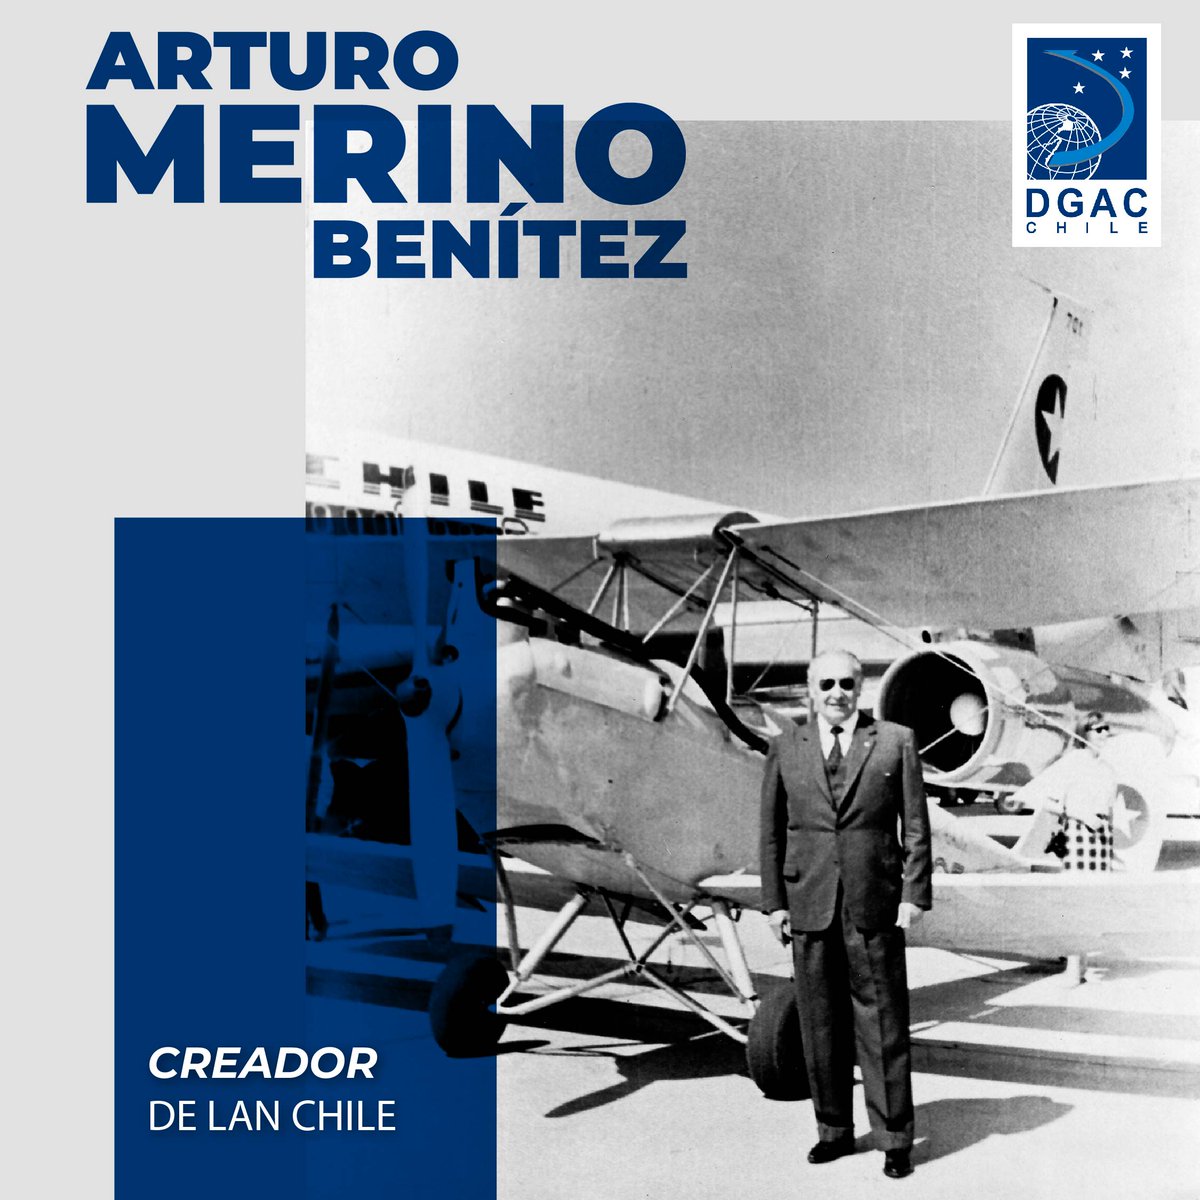 #DatosDGAC recordamos al prócer aeronáutico Arturo Merino Benítez como el propulsor del transporte aéreo en el país con la “Línea Aérea Aeropostal Santiago-Arica” que al pasar de los años, se transformaría en la Línea Aérea Nacional (LAN) primera aerolínea comercial de Chile.